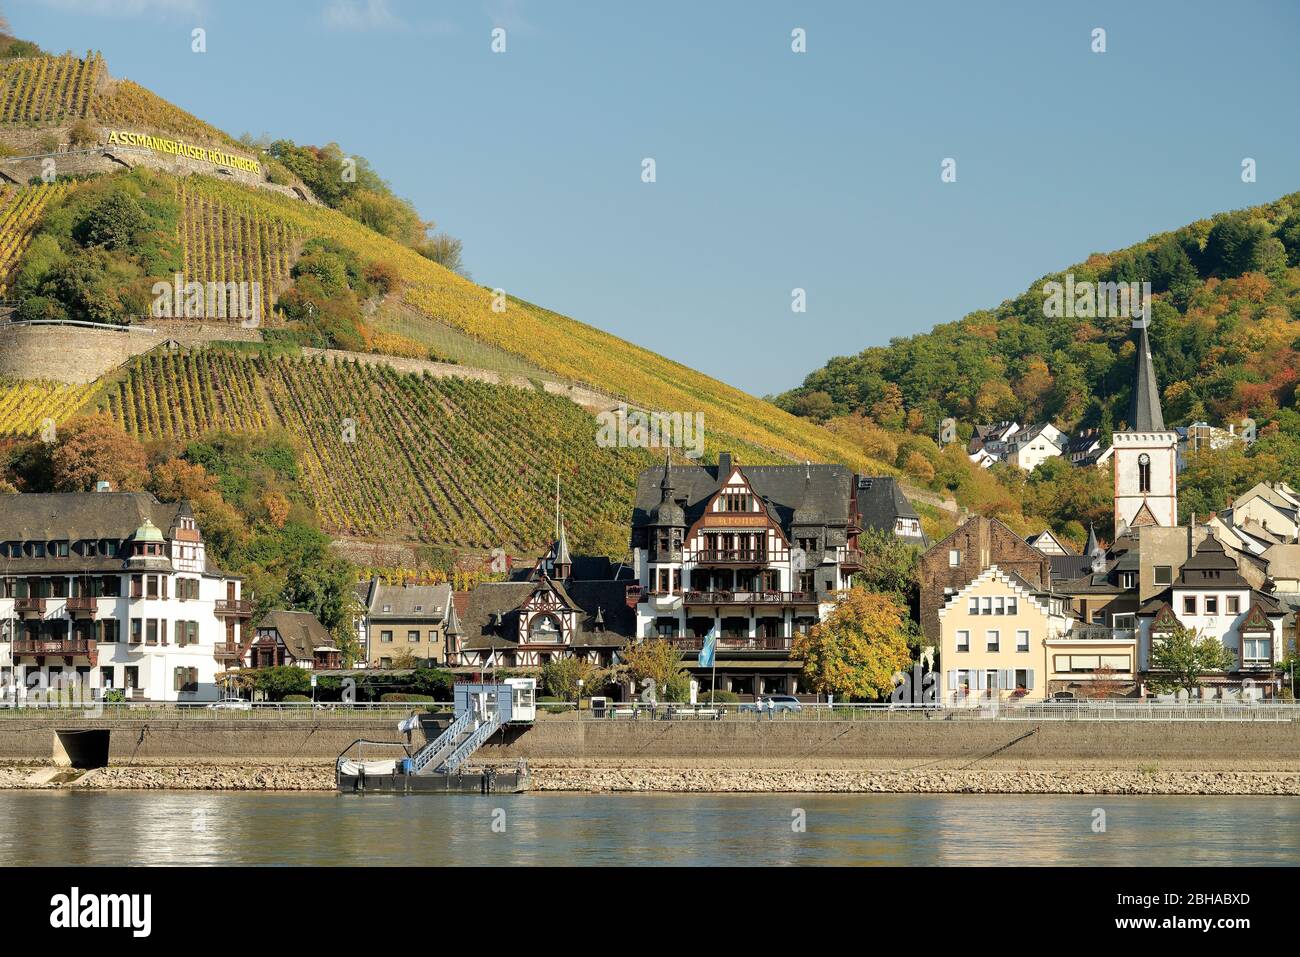 Vue sur Assmannshausen, district de Bingen am Rhein, site classé au patrimoine mondial Haute-vallée du Rhin moyen, Hesse, Allemagne Banque D'Images